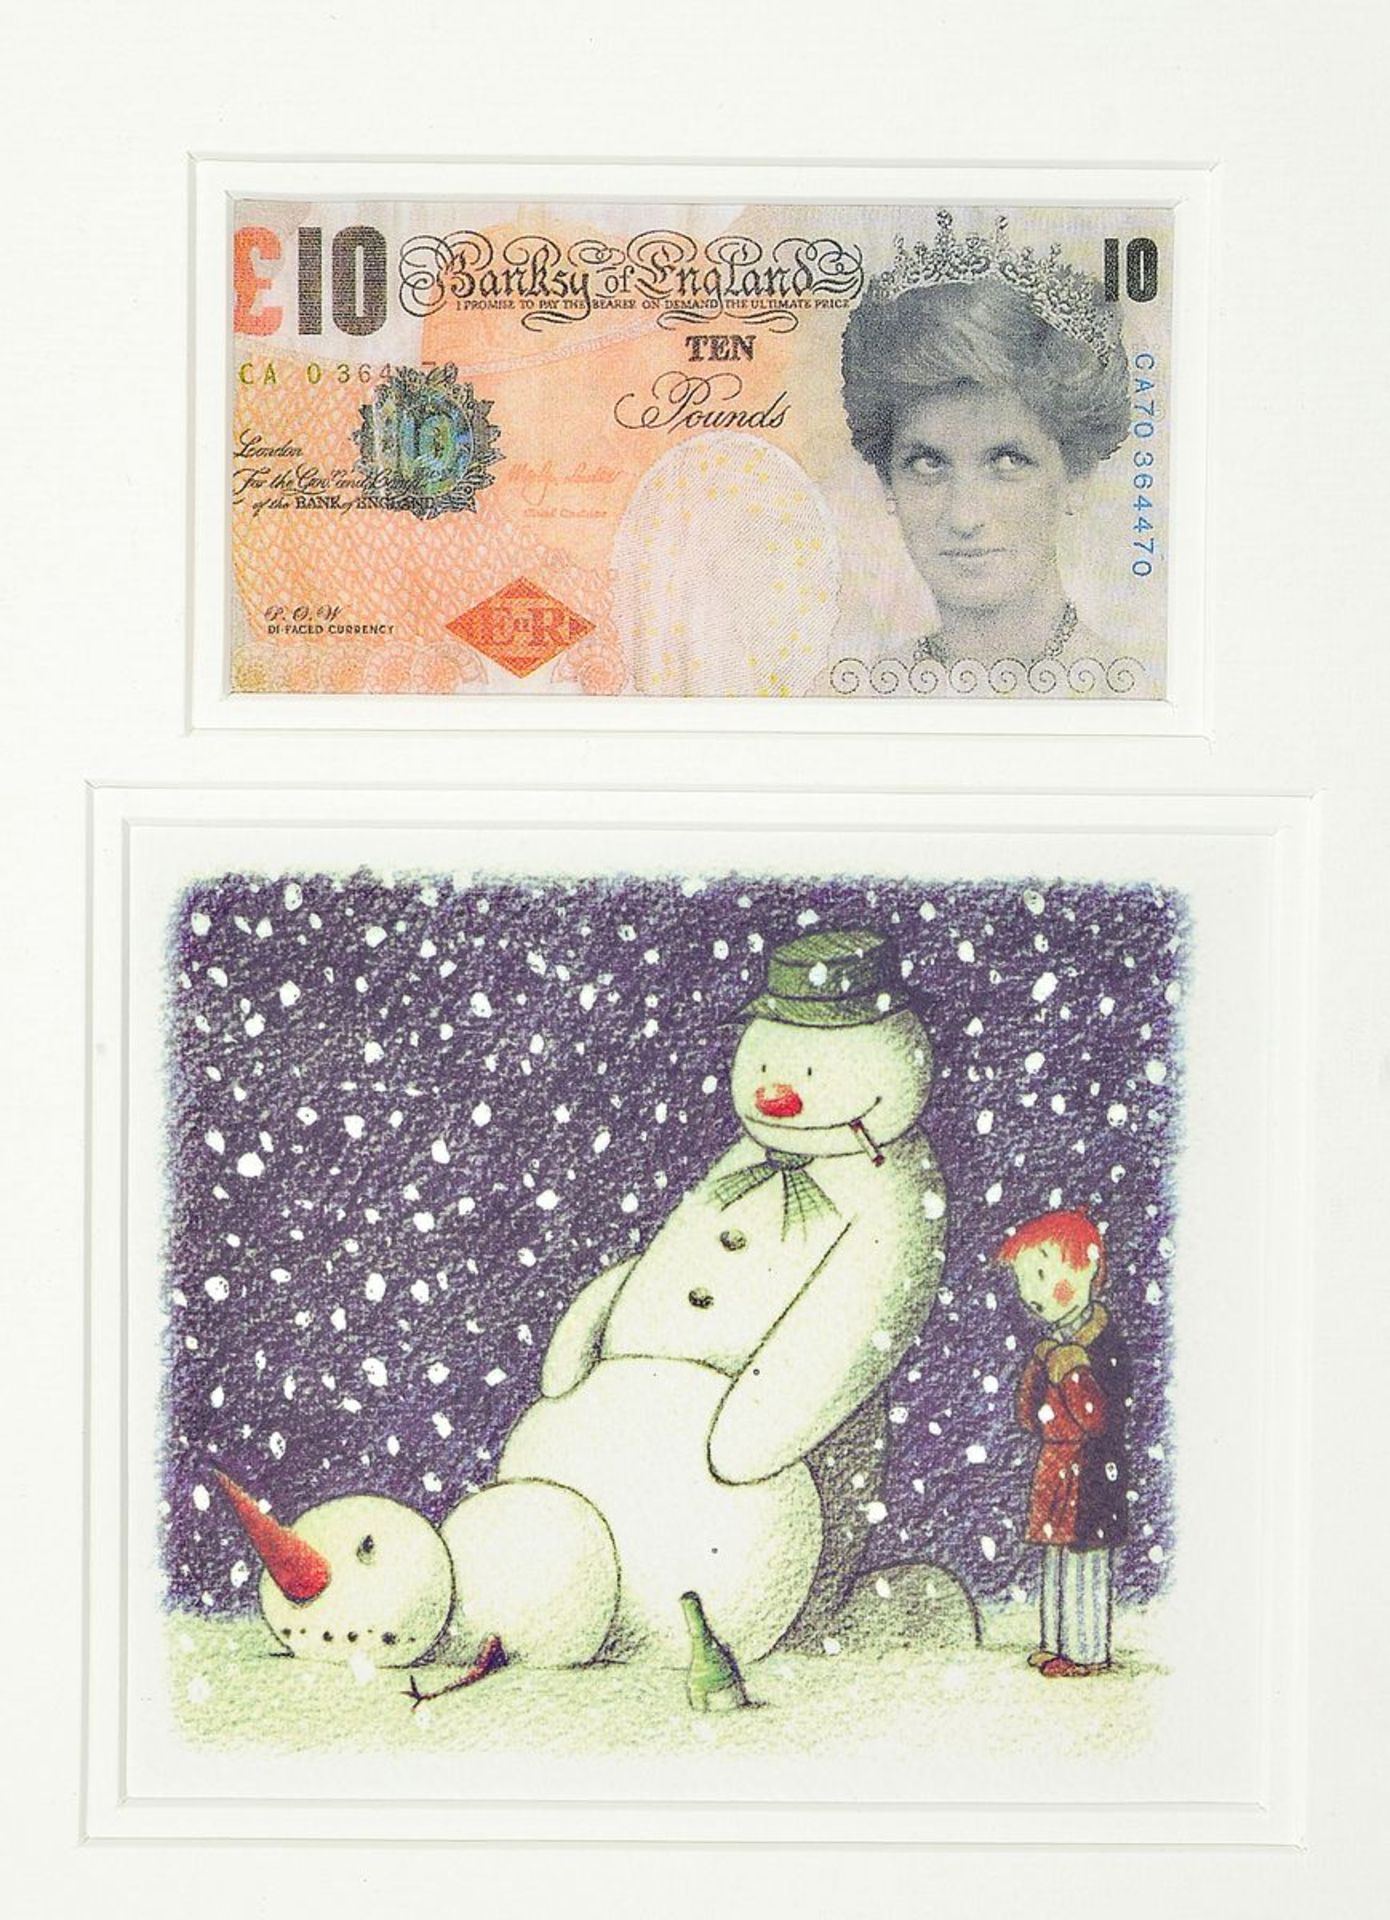 Banksy, zeitgenössischer britischer Künstler, Rude snowman and di-faced tenner, zwei Multiples in